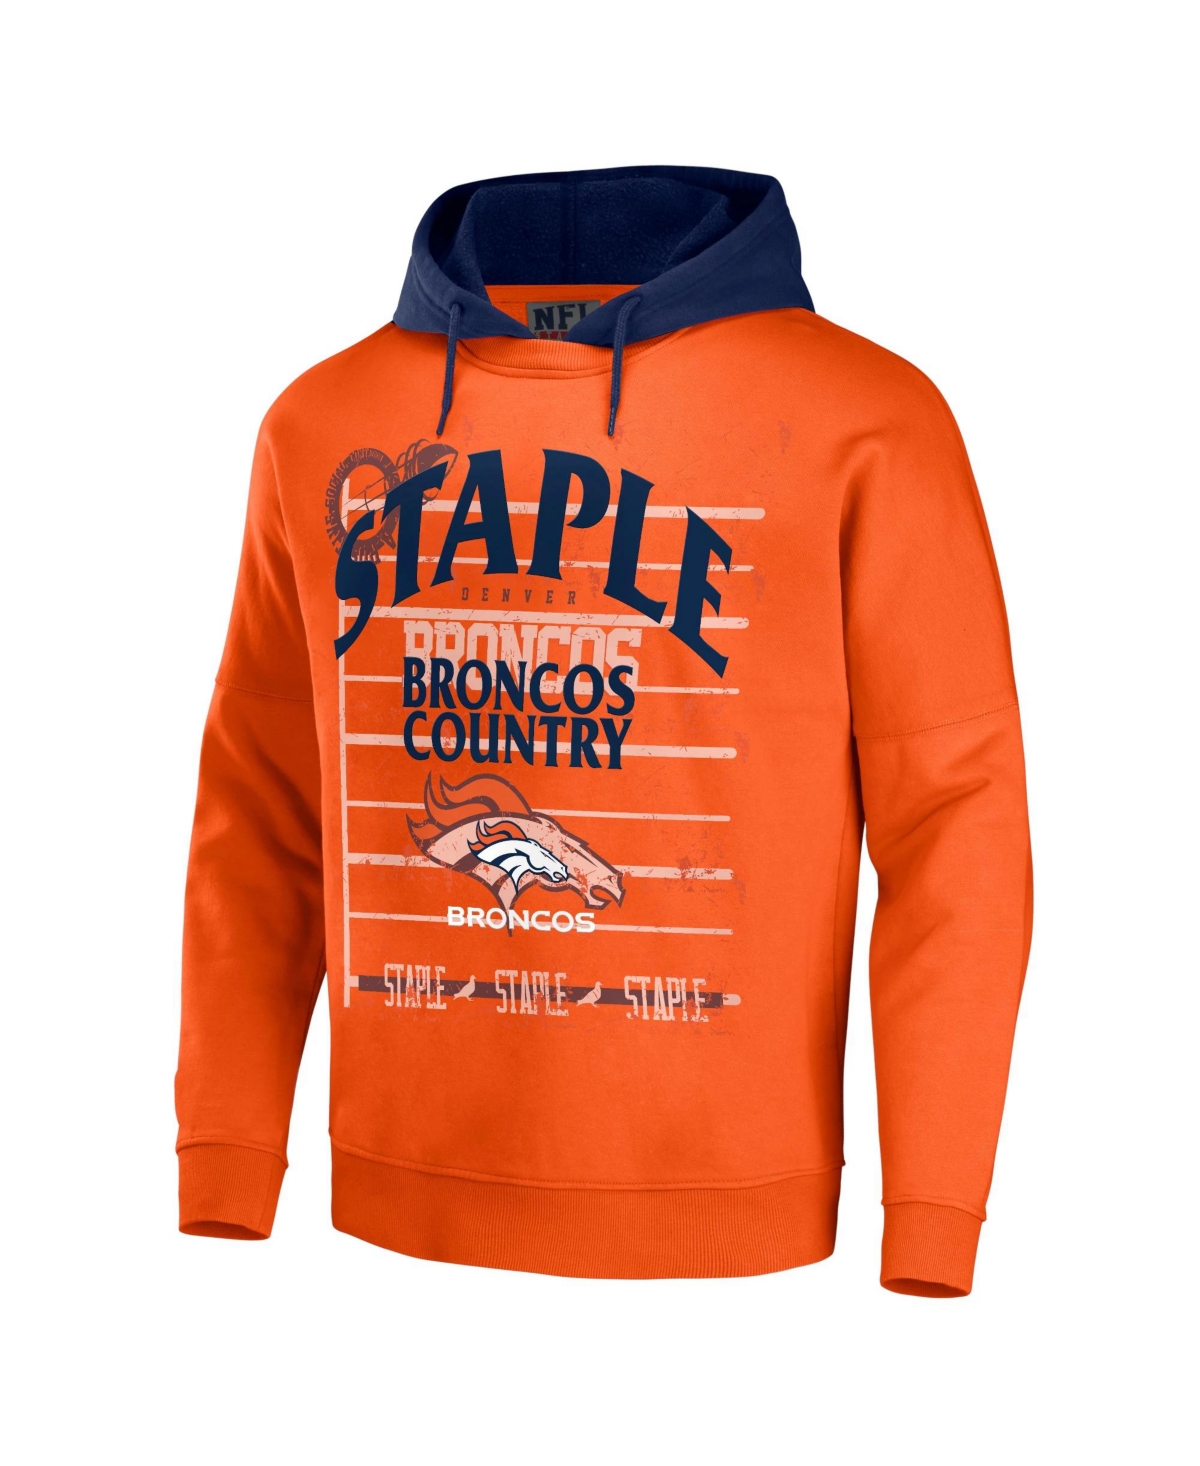 Shop Nfl Properties Men's Nfl X Staple Orange Denver Broncos Oversized Gridiron Vintage-like Wash Pullover Hoodie